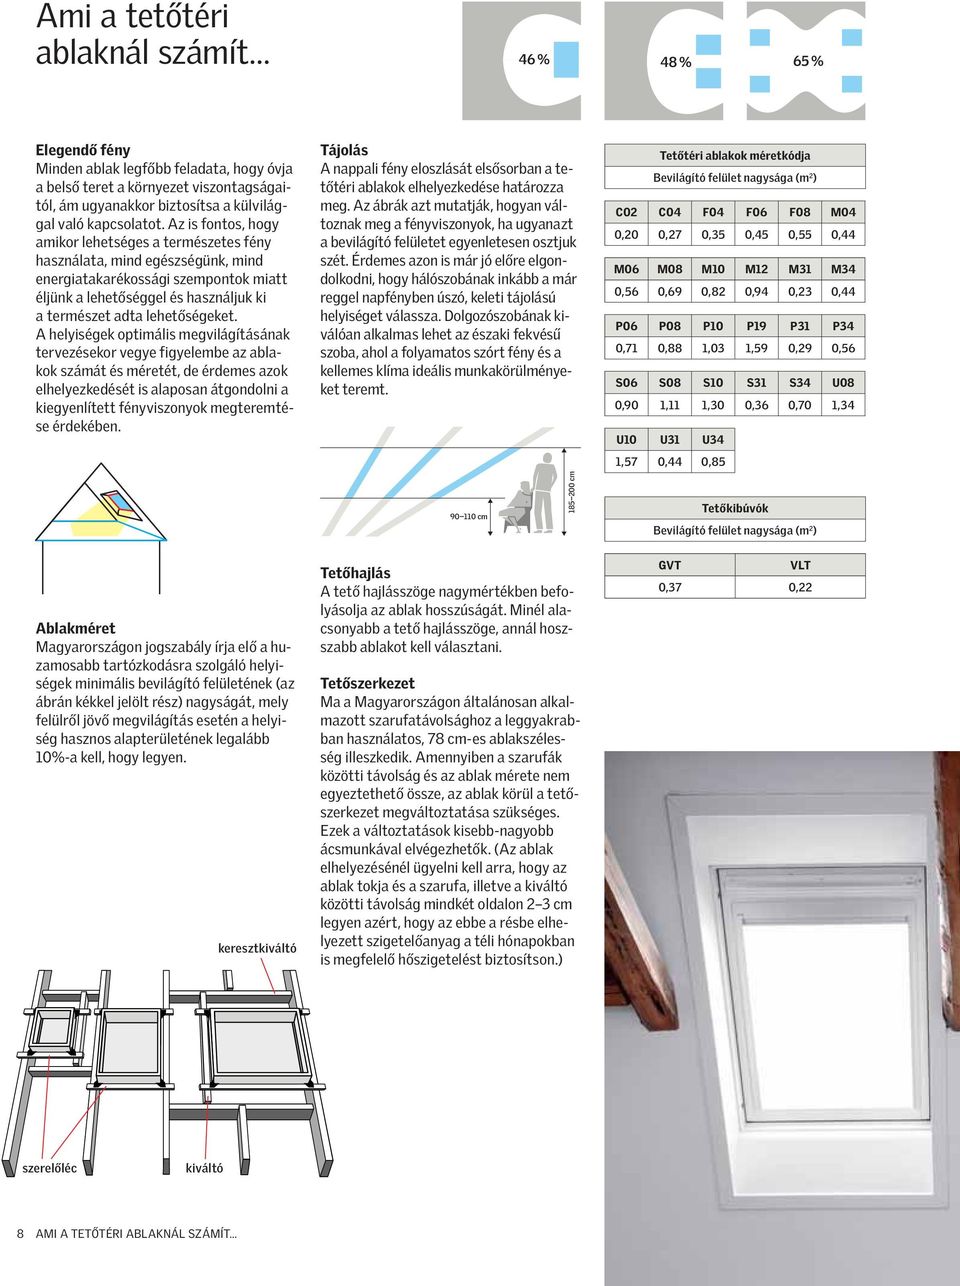 A helyiségek optimális megvilágításának tervezésekor vegye figyelembe az ablakok számát és méretét, de érdemes azok elhelyezkedését is alaposan átgondolni a kiegyenlített fényviszonyok megteremtése